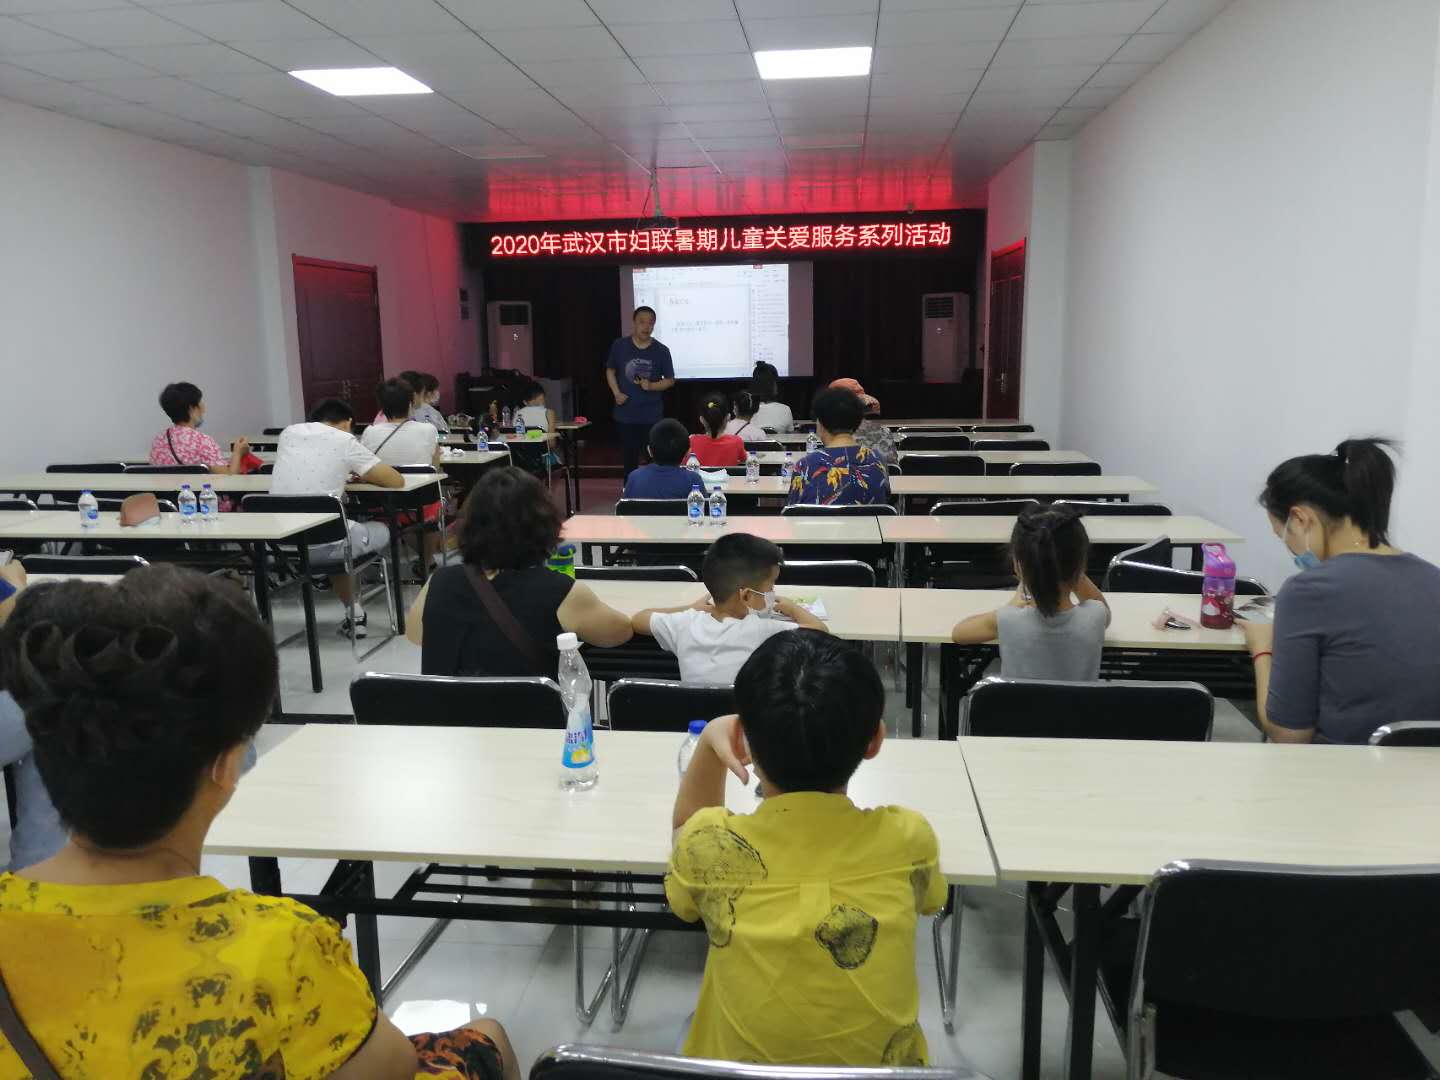 2020年8月11日上午，武汉市妇女儿童活动中心党支部结合武汉市妇联暑期儿童关爱服务系列活动 “流动安全大篷车”走进了汉阳区五里墩街五墨里社区，受到参与活动的社区家长及儿童的一致好评。.jpg